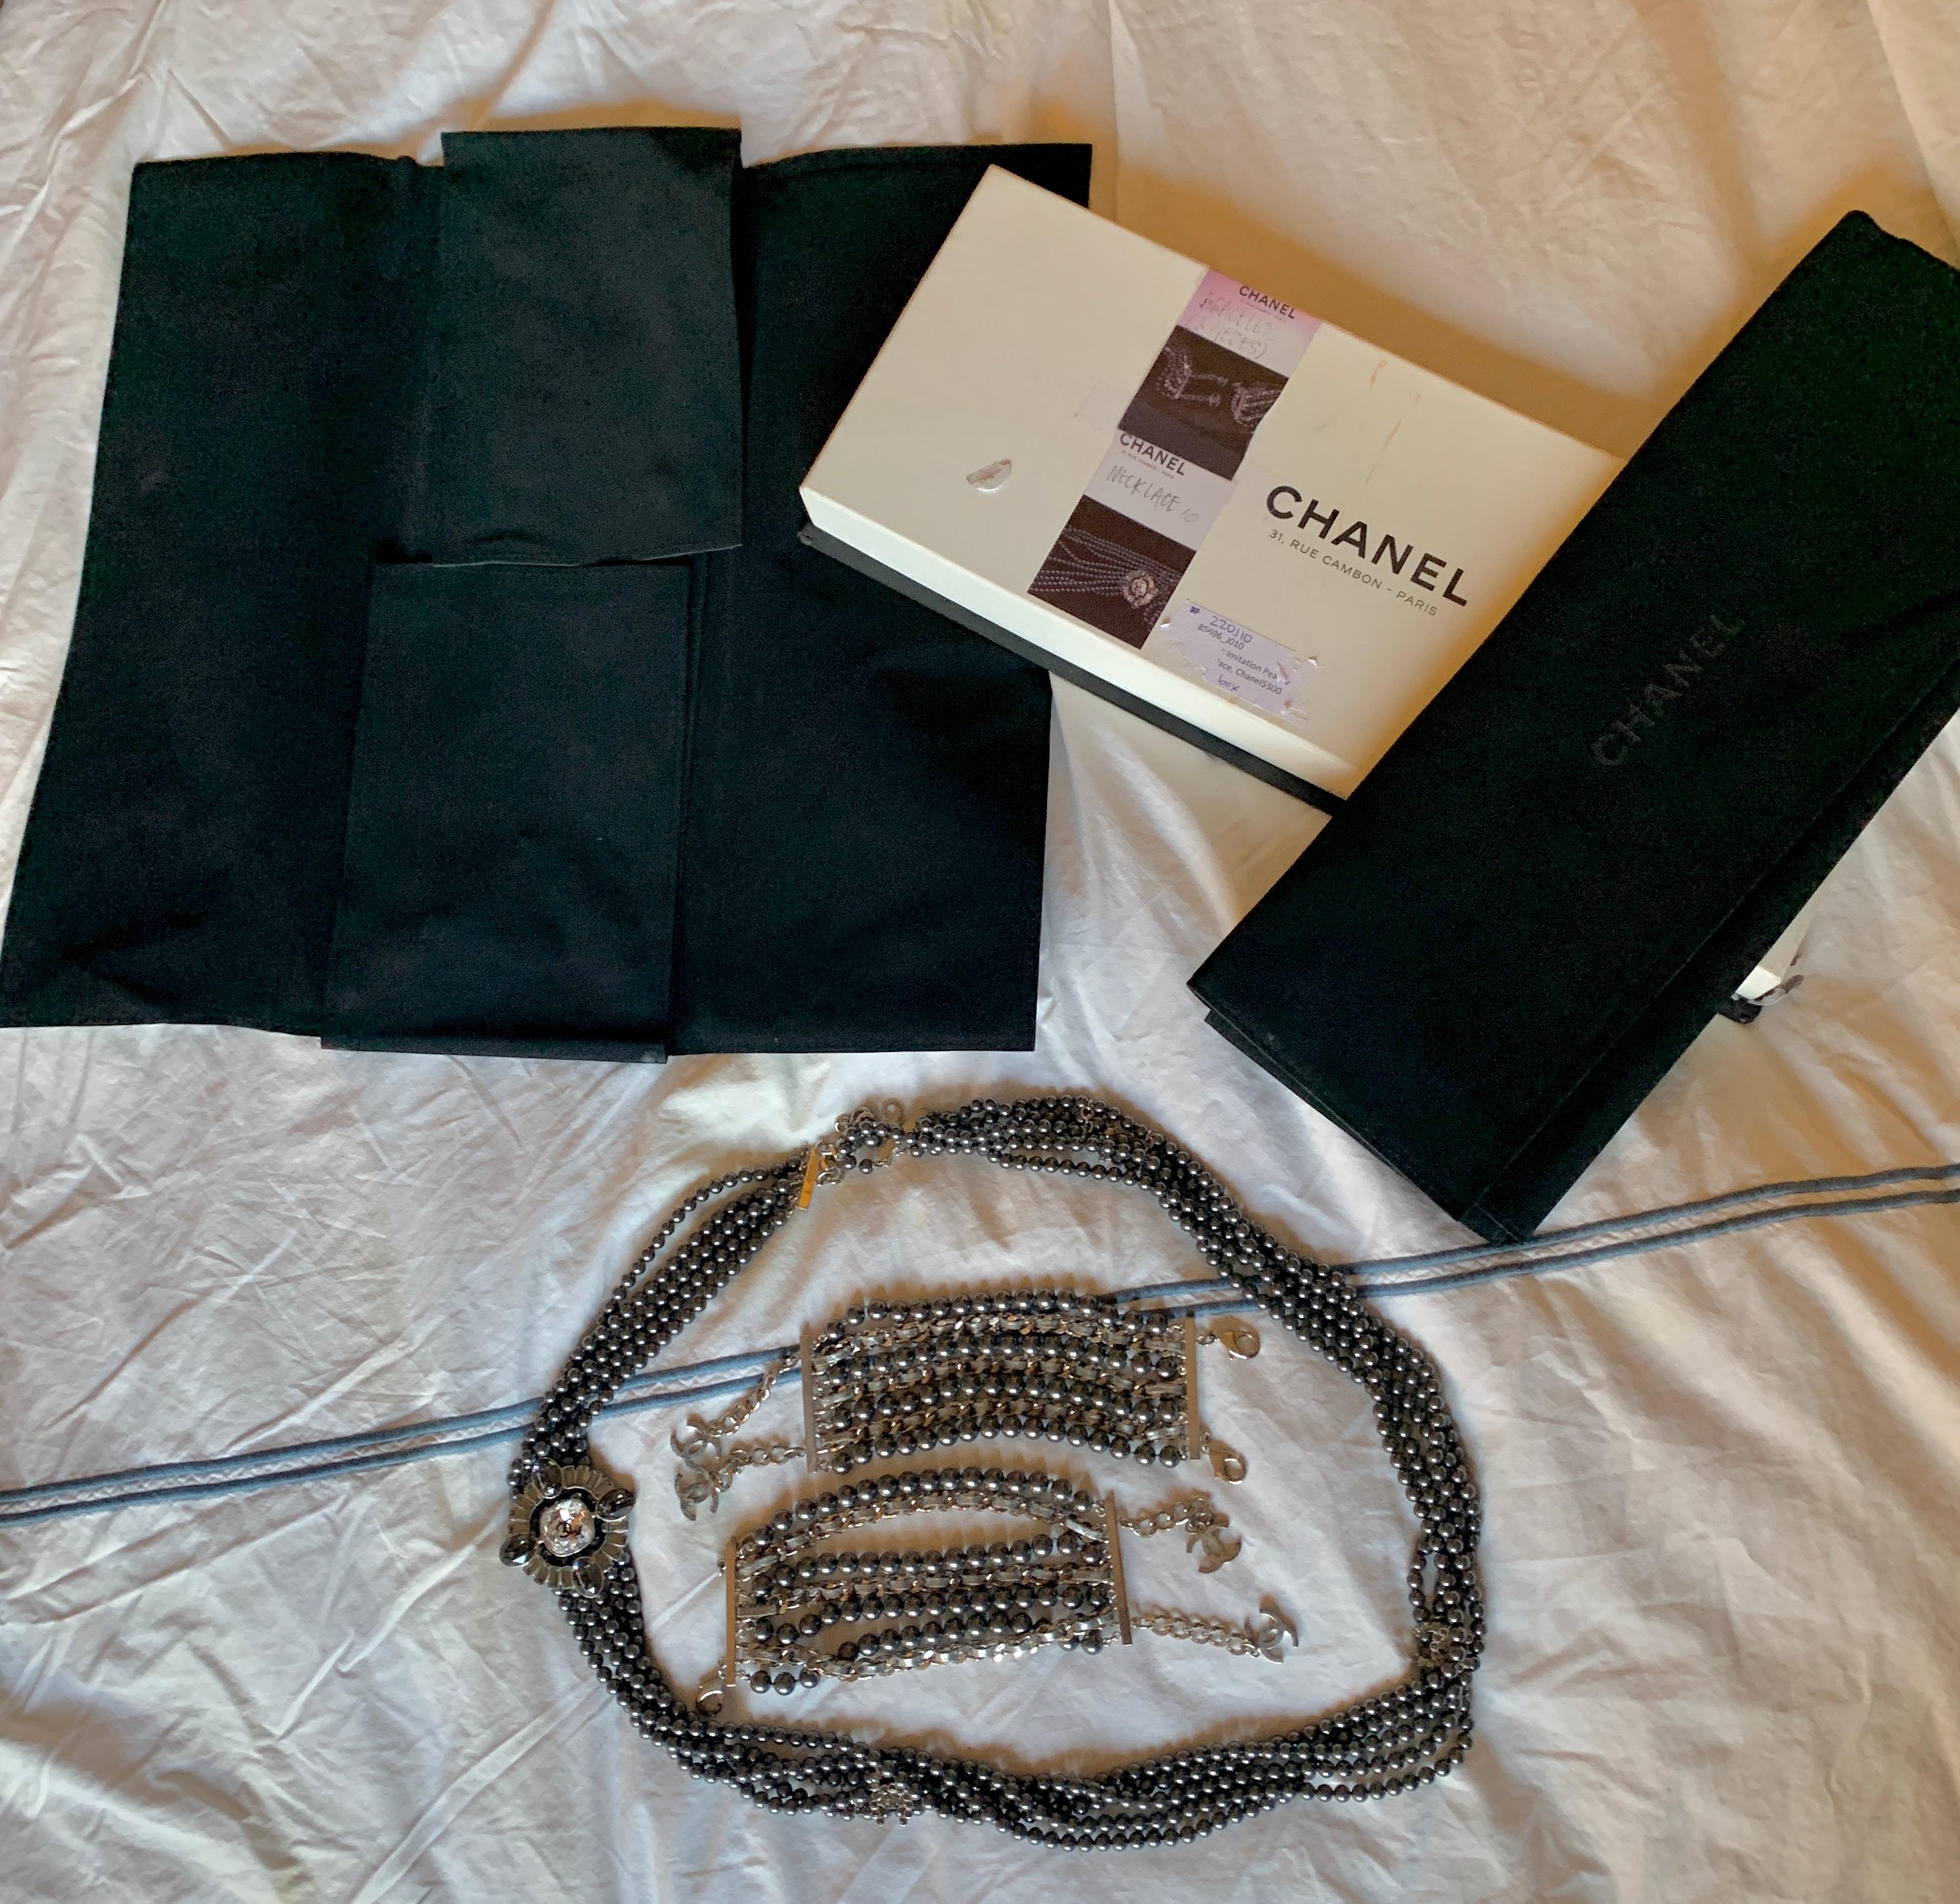 Il s'agit d'une très rare et magnifique parure Chanel comprenant un collier Chanel CC Multistrand de 38 pouces en fausses perles noires et pierres de Rhin et deux bracelets avec les deux pochettes Chanel d'origine et la boîte.
Le collier et les